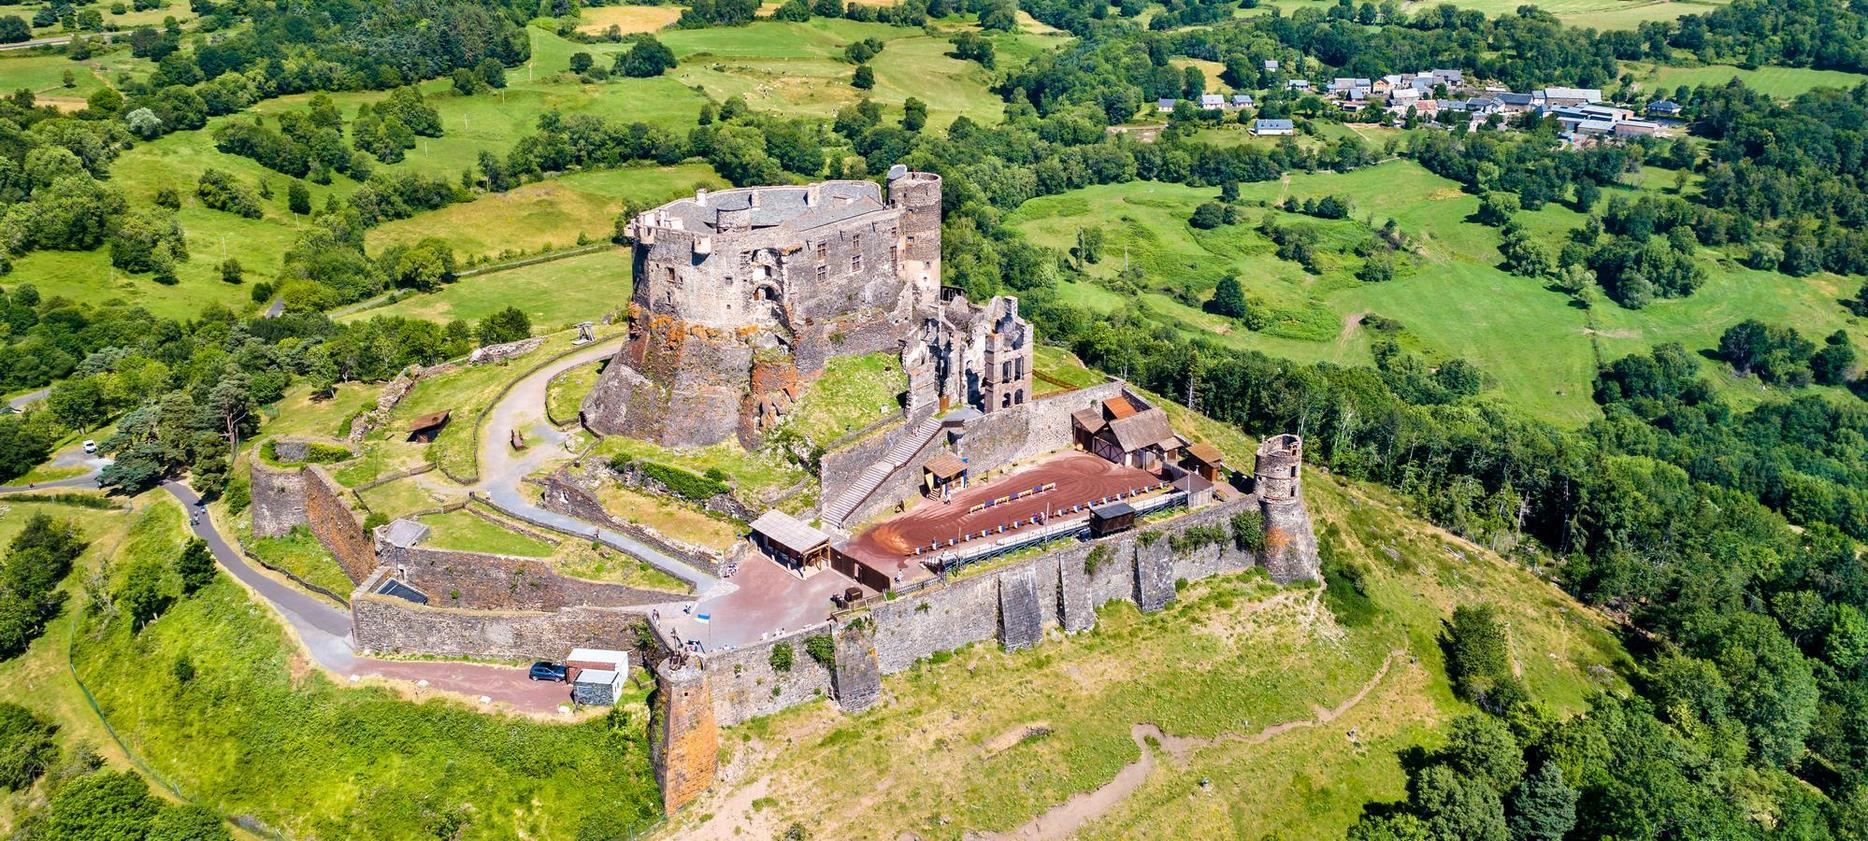 Vur Aerienne du chateau de Murol, chateau fort dans le Puy de Dôme